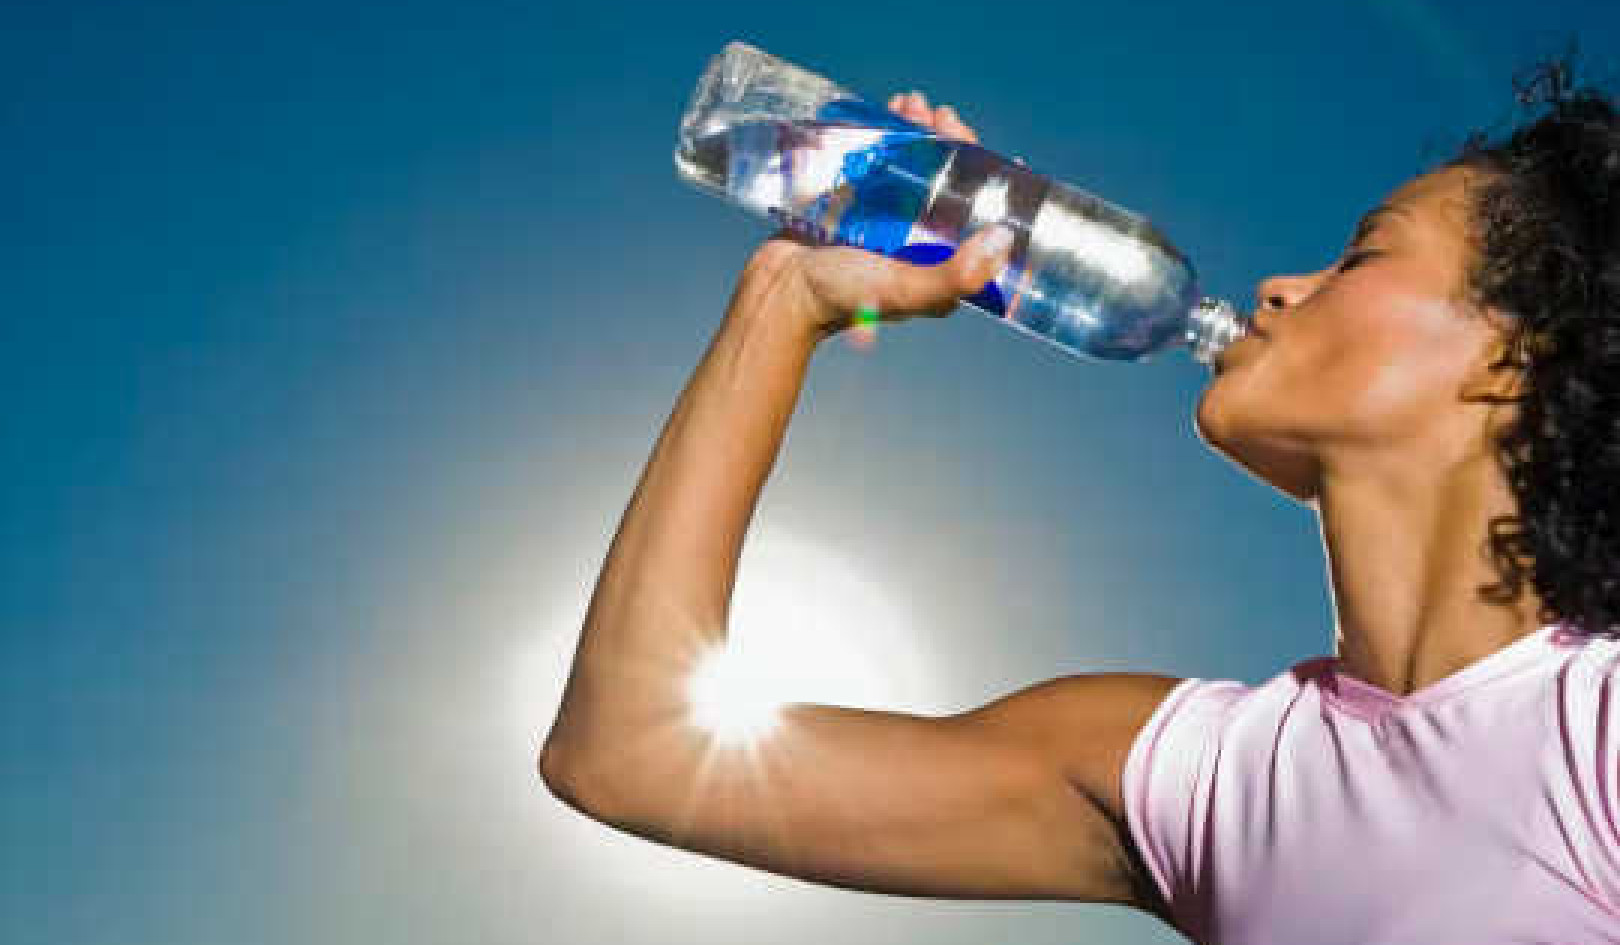 אילו עשרות שנים של מחקר מתעדים את ההשפעות הבריאותיות של BPA